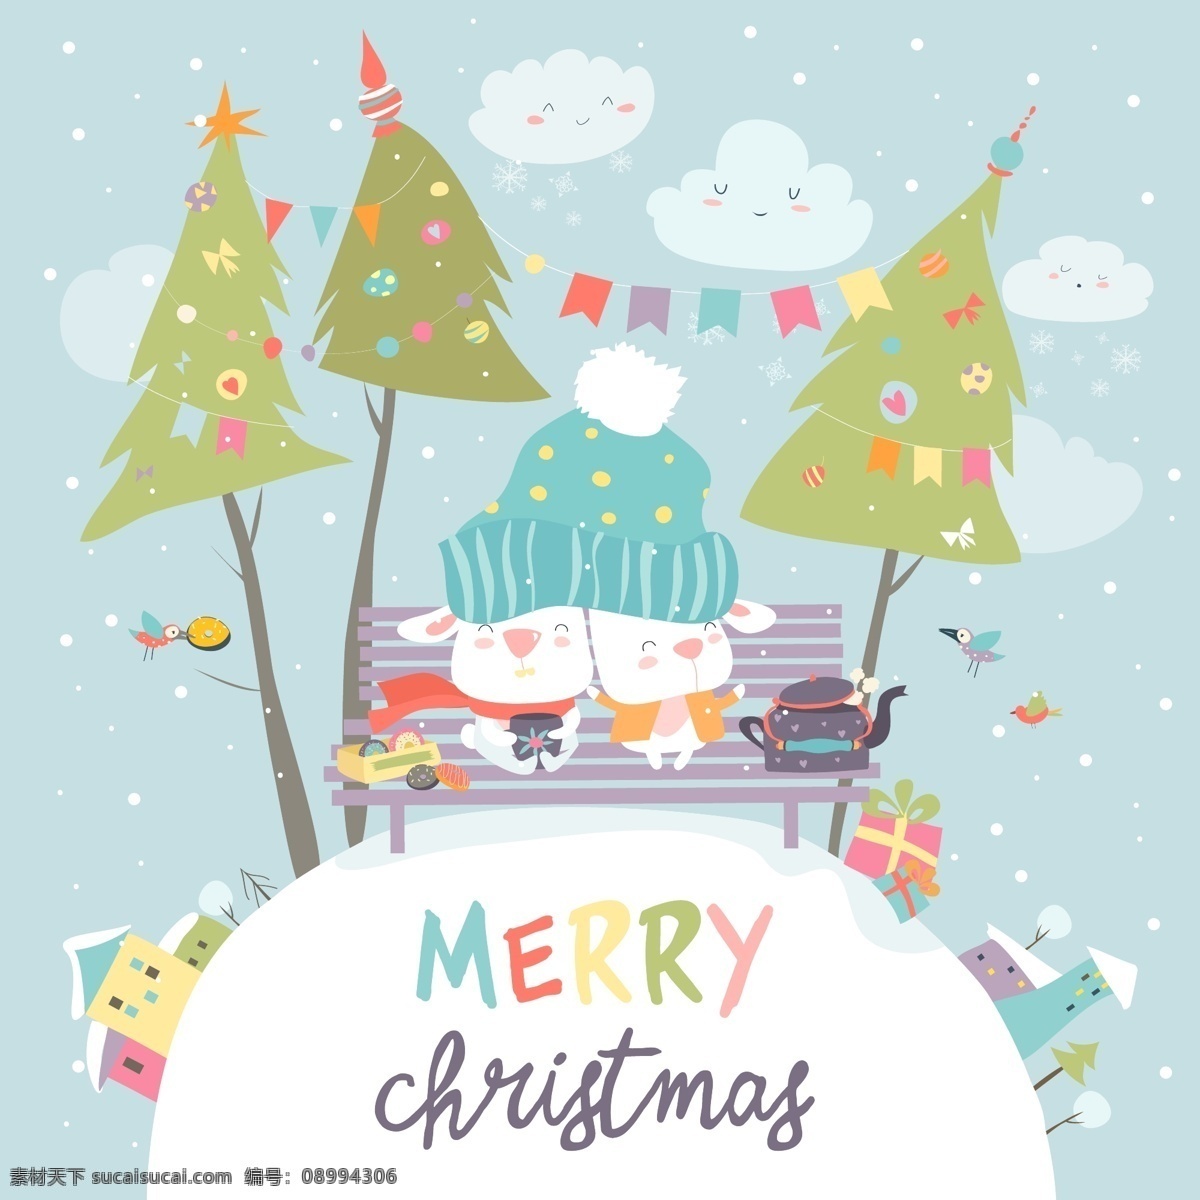 卡通 圣诞树 树木 礼物 卡通礼物素材 卡通圣诞树 卡通素材 礼物素材 免抠素材 矢量插图